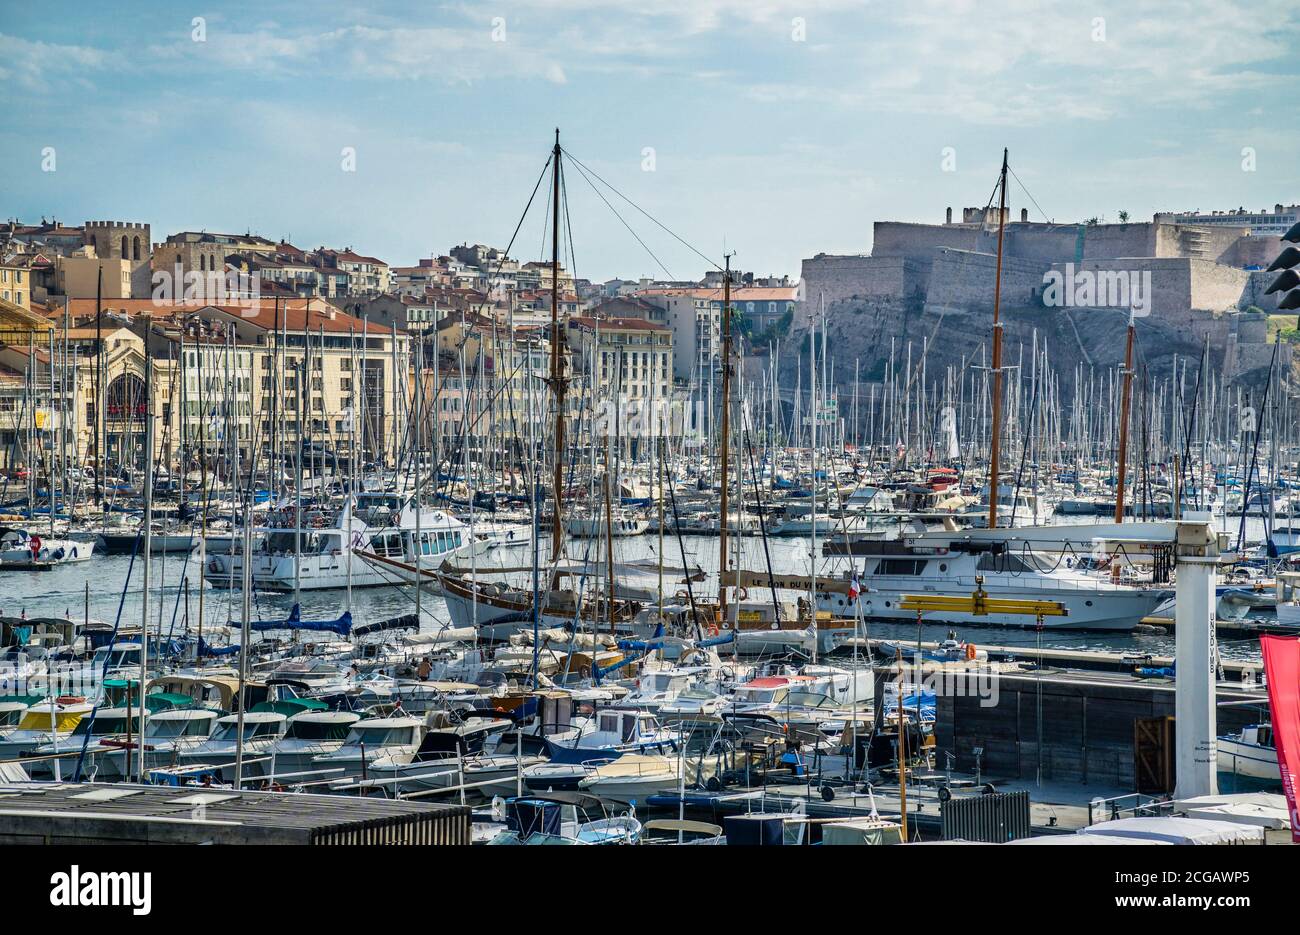 Vieux Port, el antiguo puerto de Marsella con vistas al fuerte Saint-Nicolas del siglo XVII, Bouches-du-Rhône departamento, sur de Francia Foto de stock